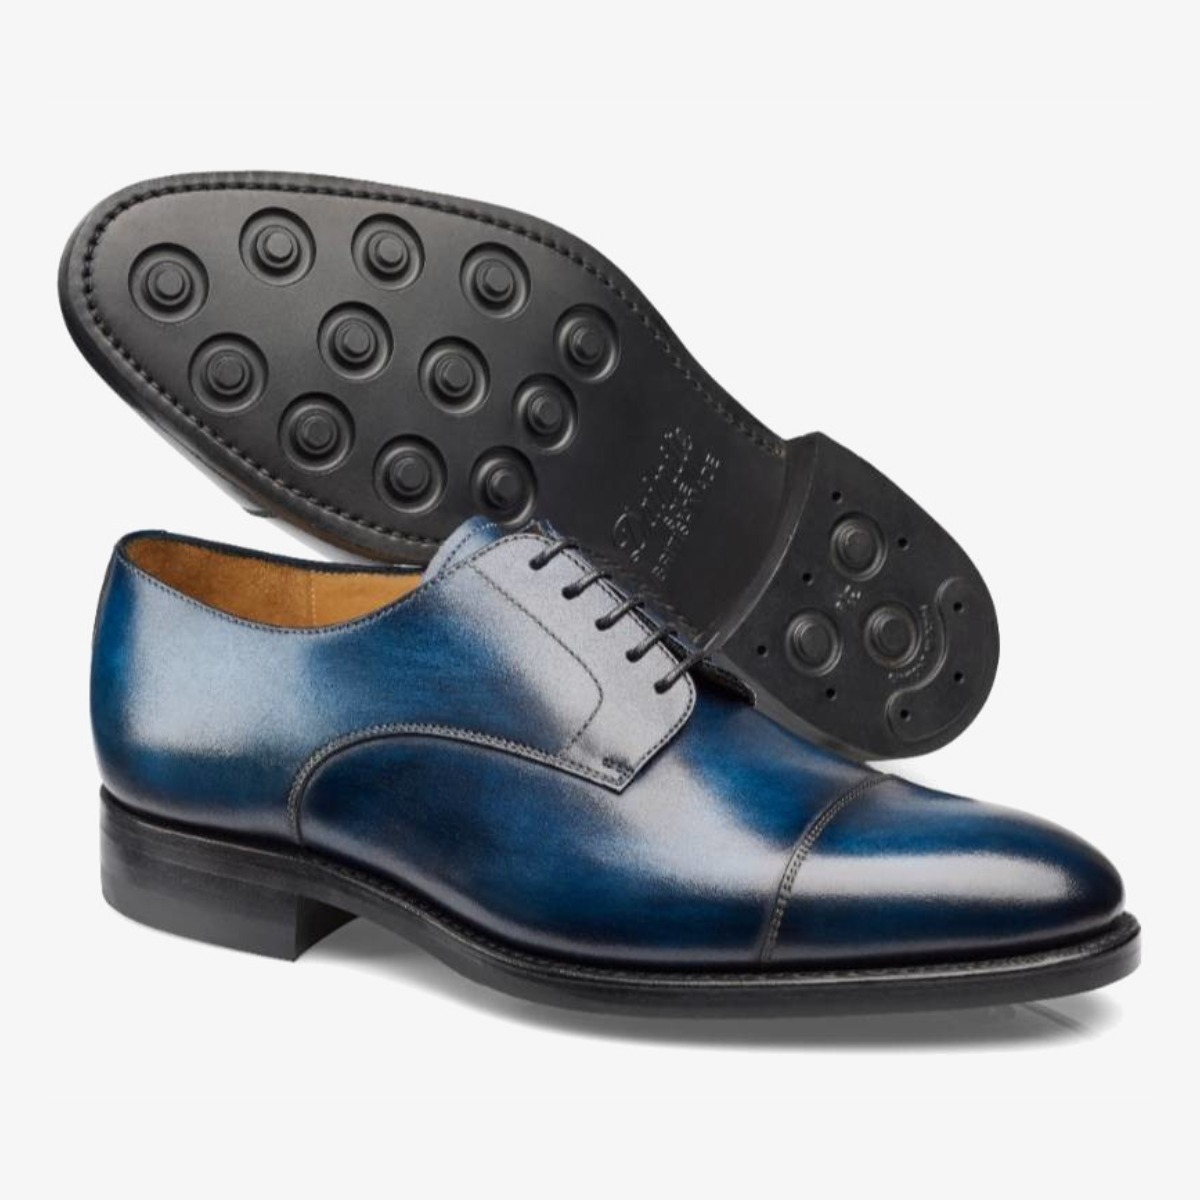 Carlos Santos 9381 Gary blue toe cap men's derby shoes